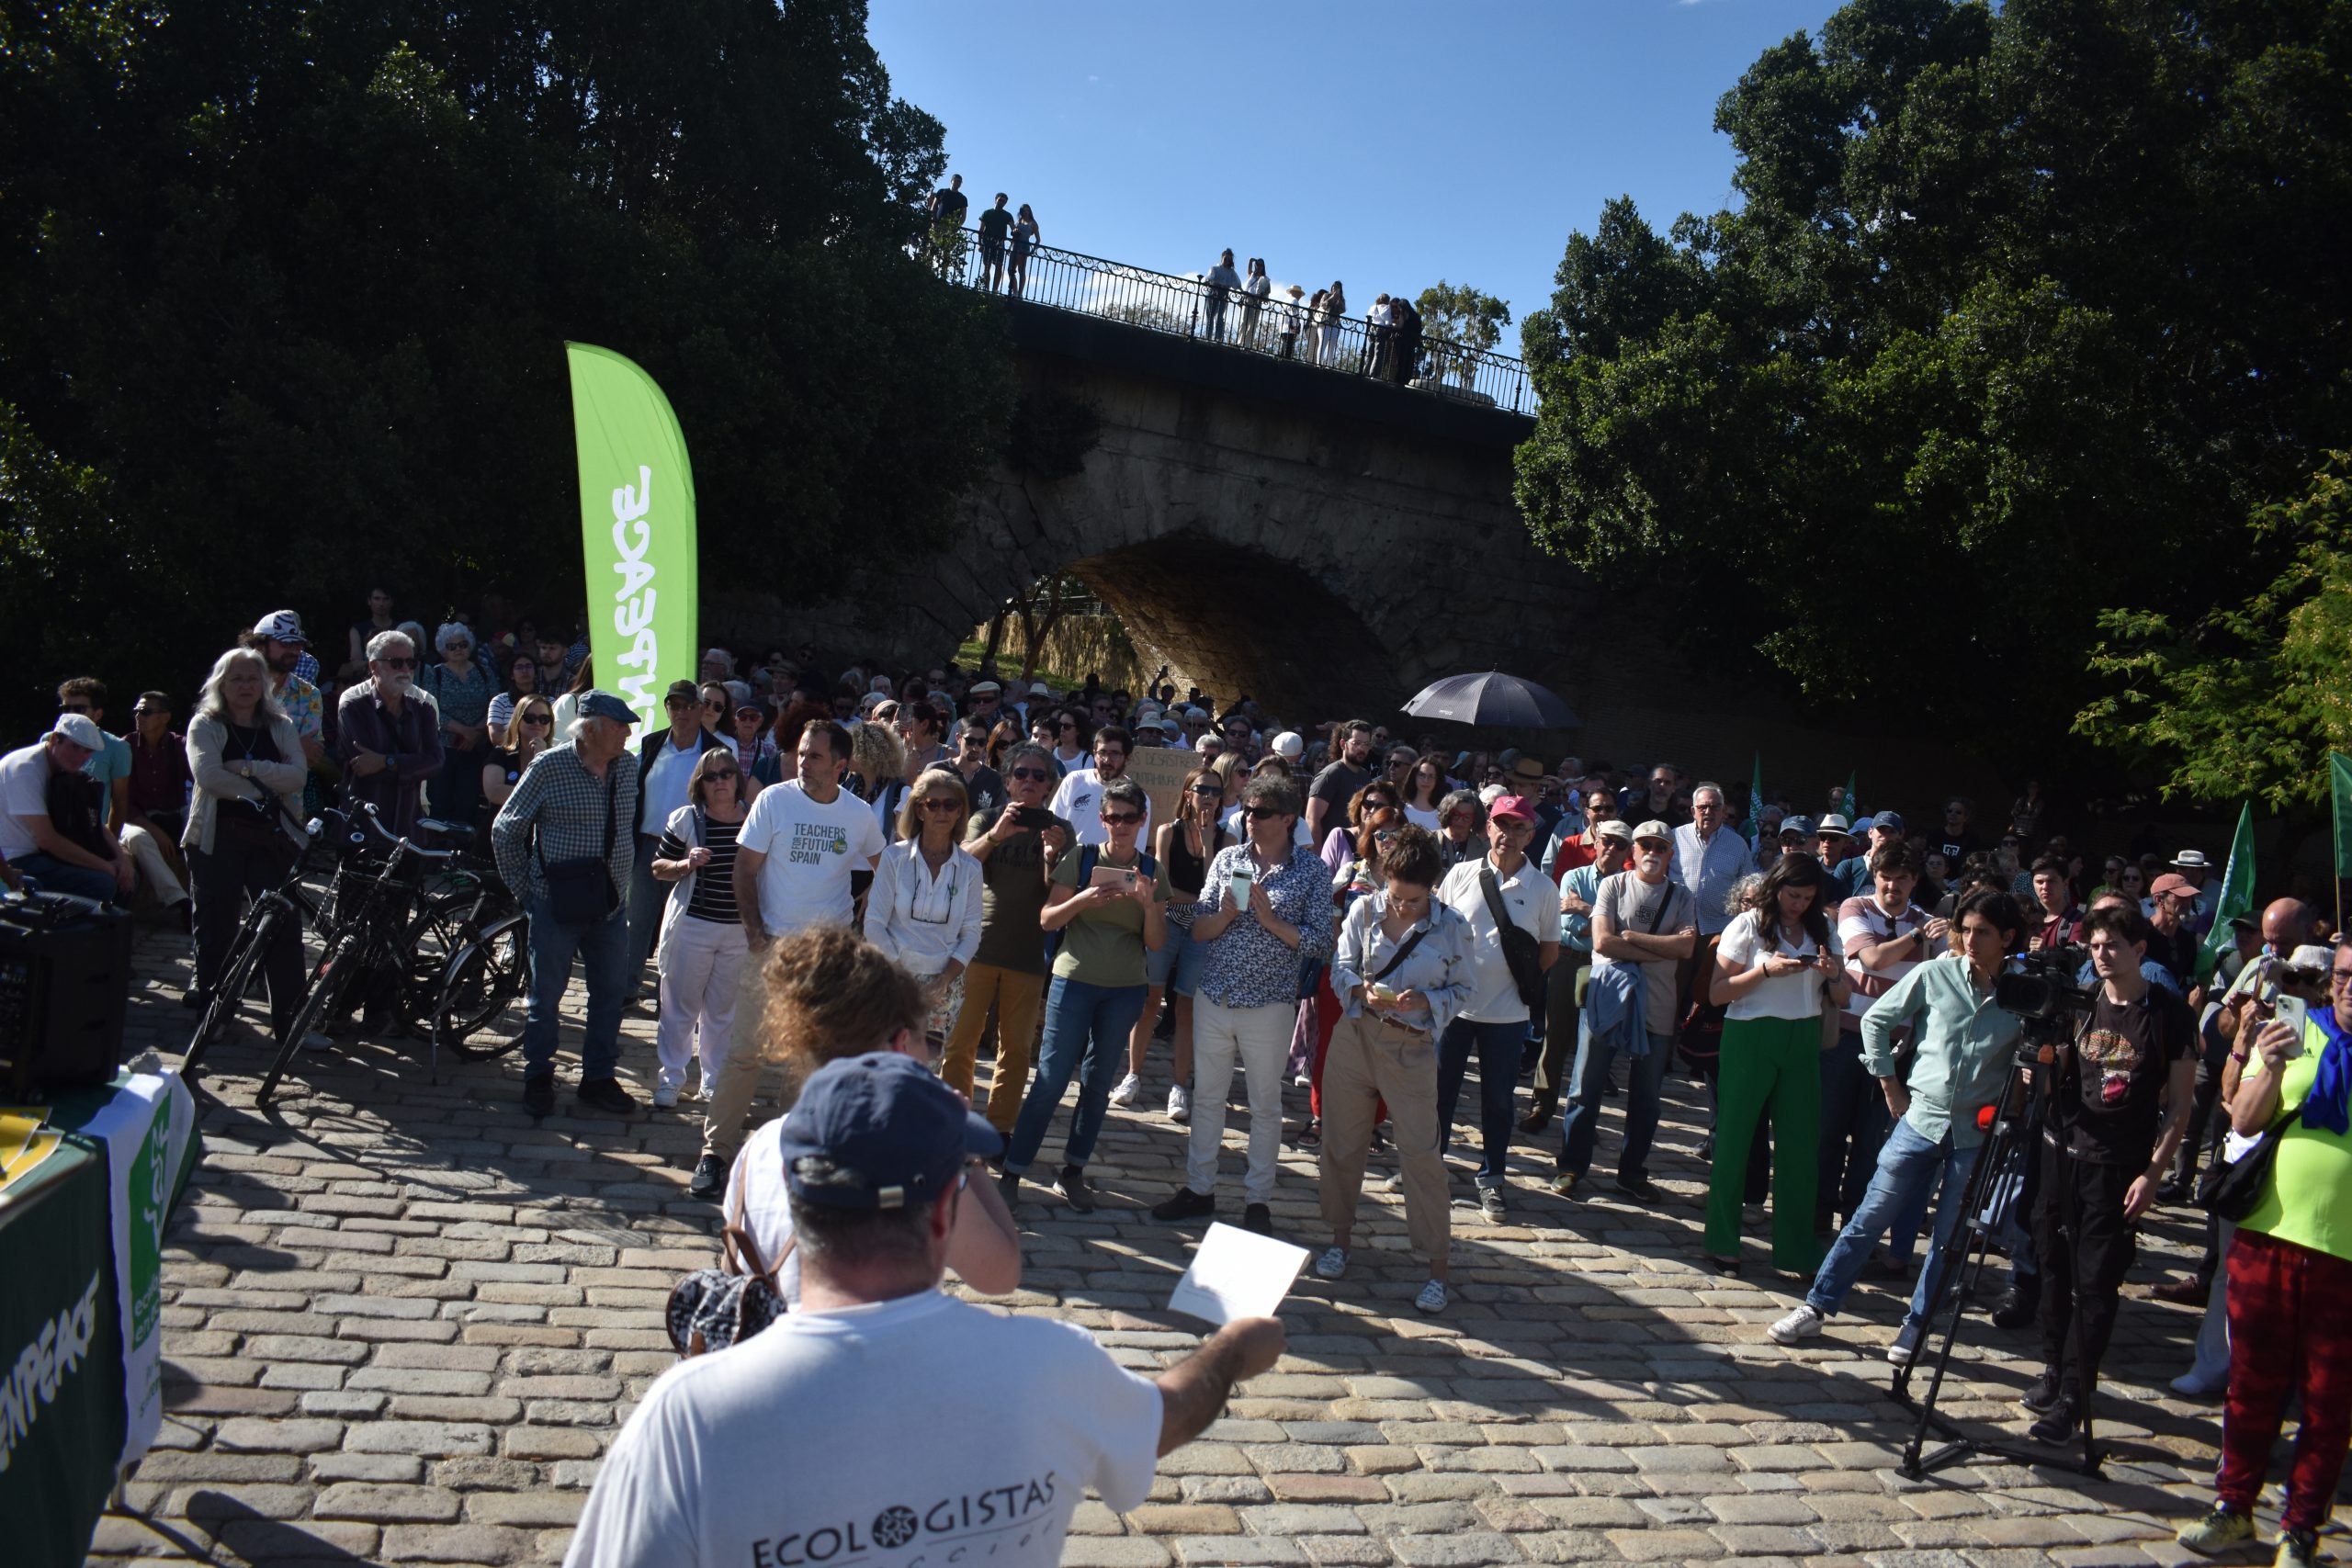 Ecologistas informado a los asistentes a la protesta en contra del vertido de los residuos mineros de Aznalcóllar en el río Guadalquivir